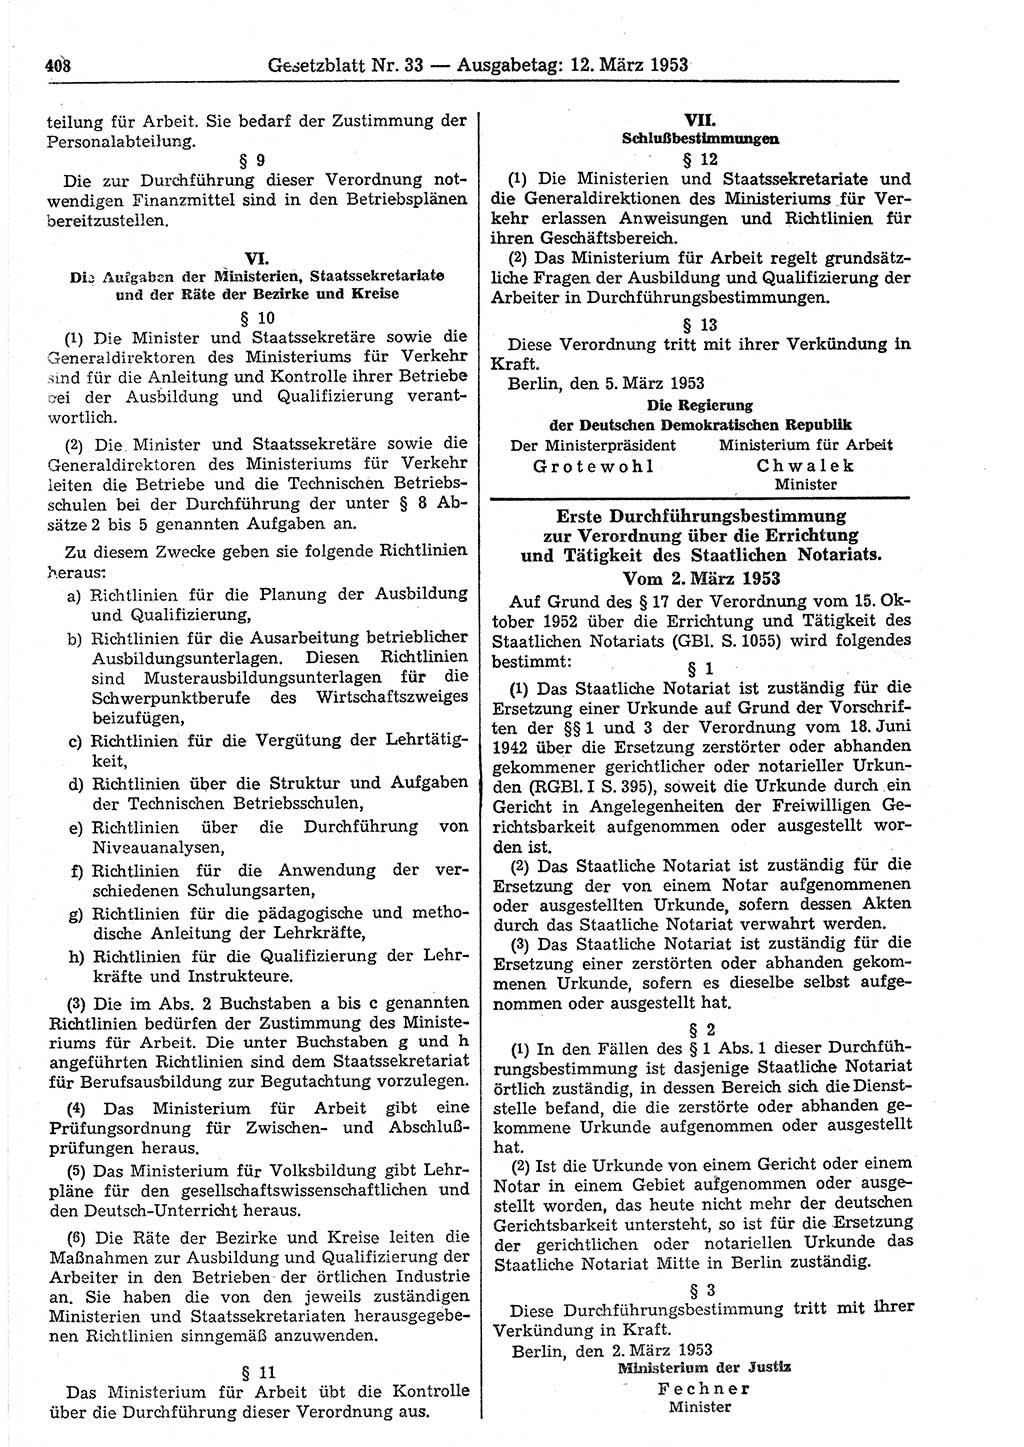 Gesetzblatt (GBl.) der Deutschen Demokratischen Republik (DDR) 1953, Seite 408 (GBl. DDR 1953, S. 408)